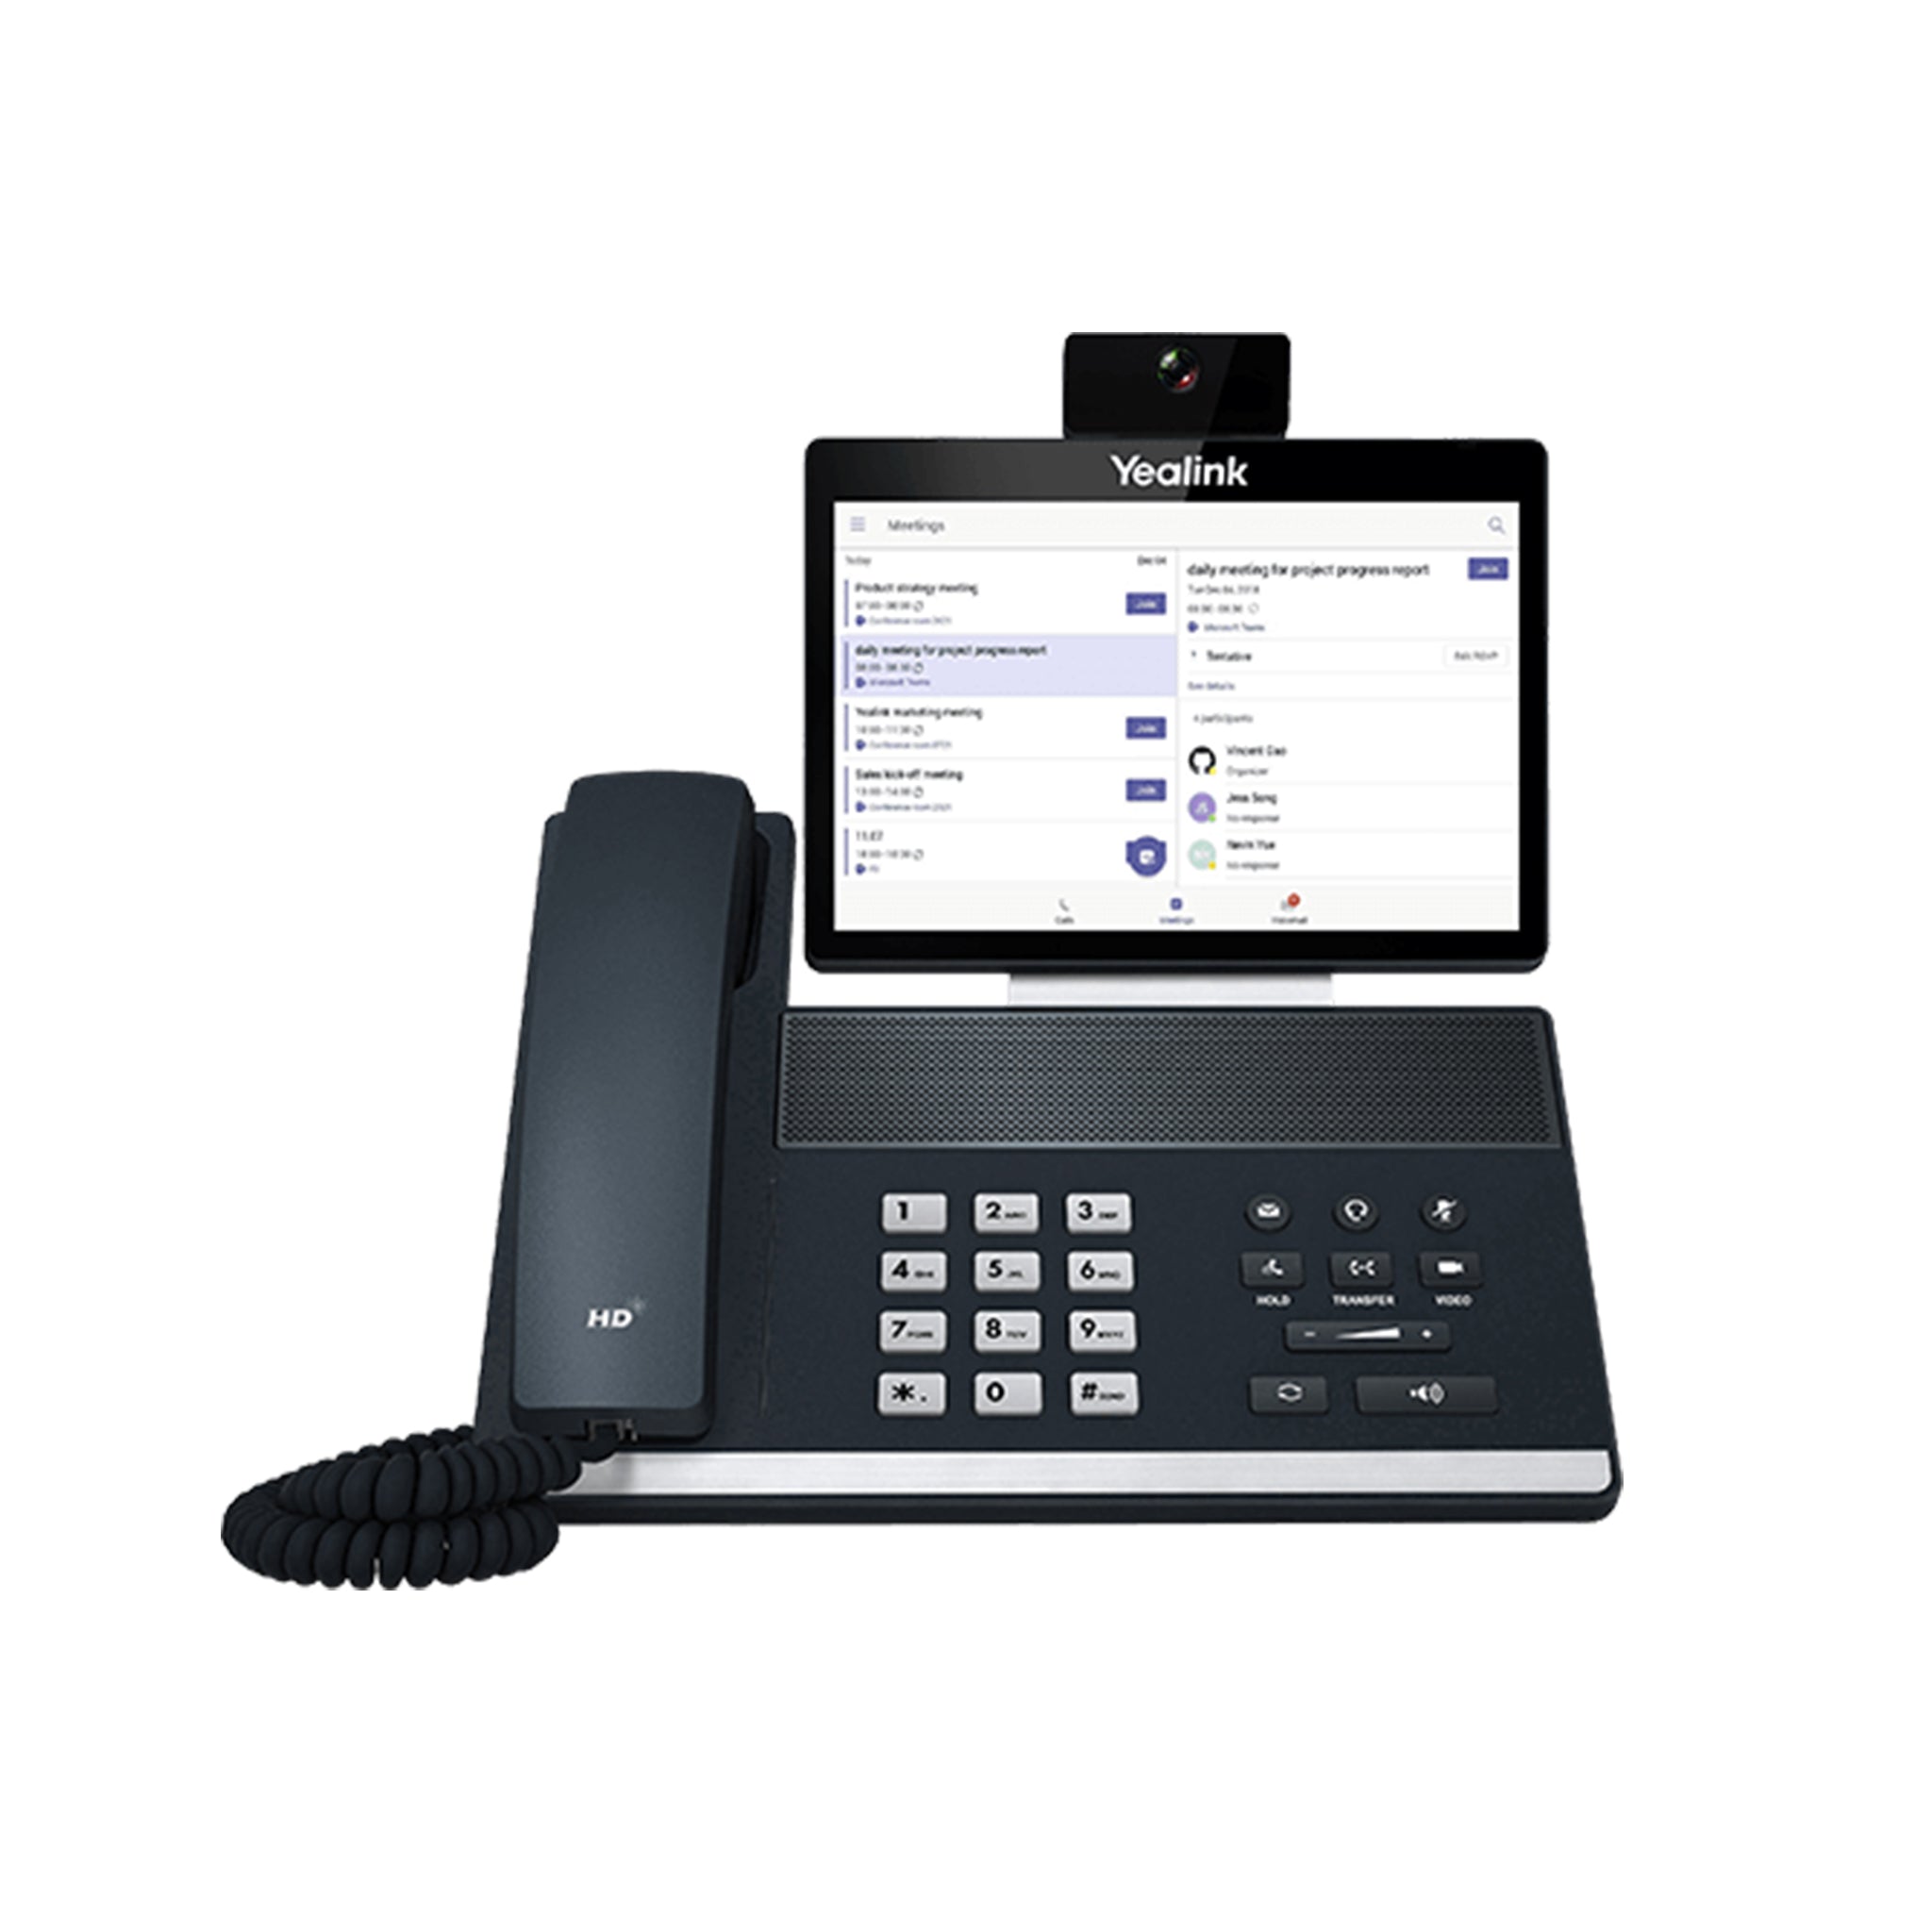 Yealink VP59 - MS Teams-Based Video VoIP Phone VP59 | AL-VoIP Store